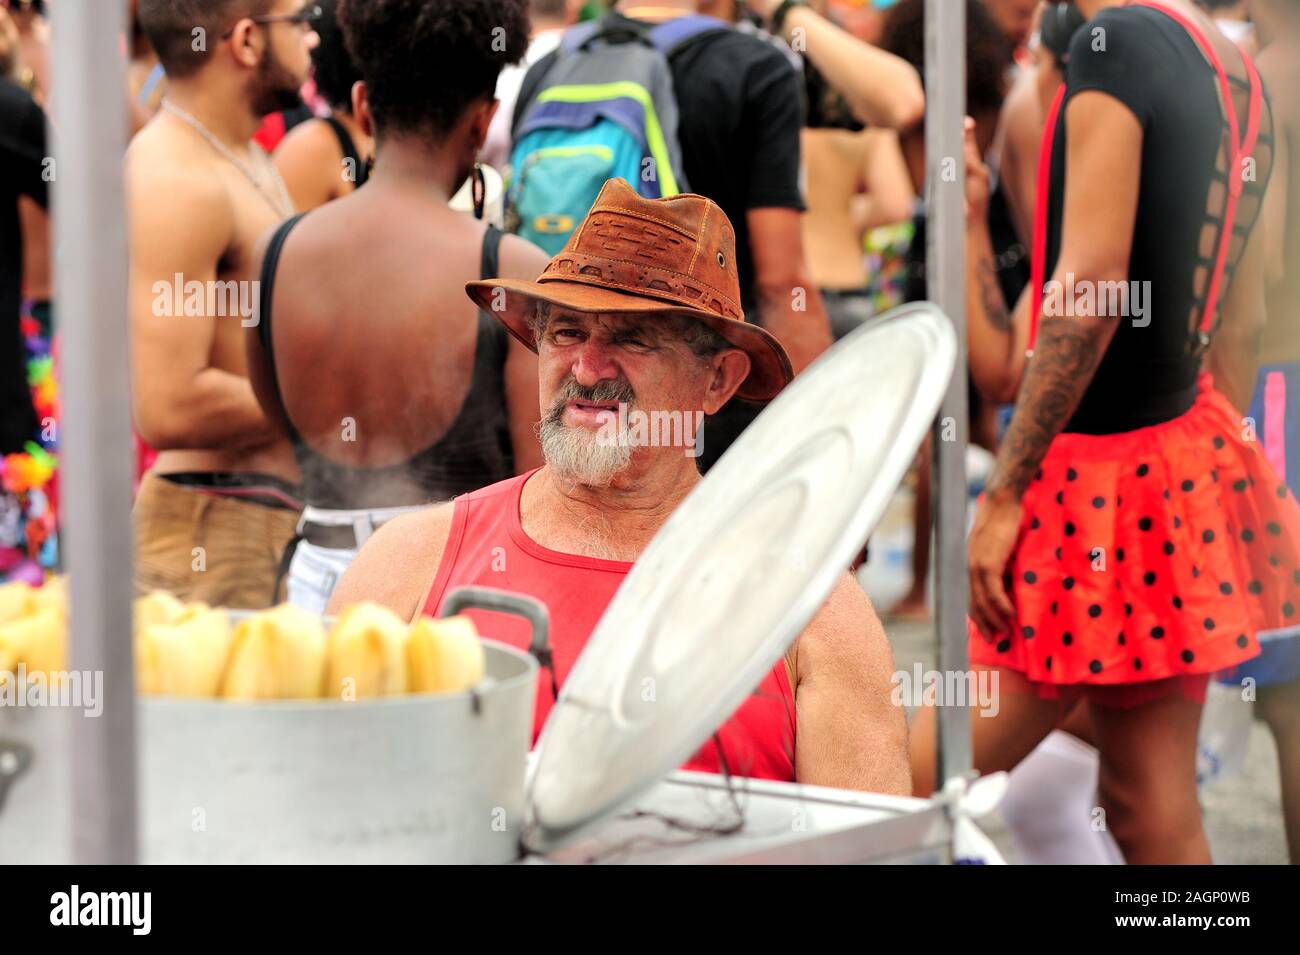 Sud America, Brasile - 3 Marzo 2019: uomo vendita di mais bollito durante un carnevale street parade di Rio de Janeiro. Foto Stock